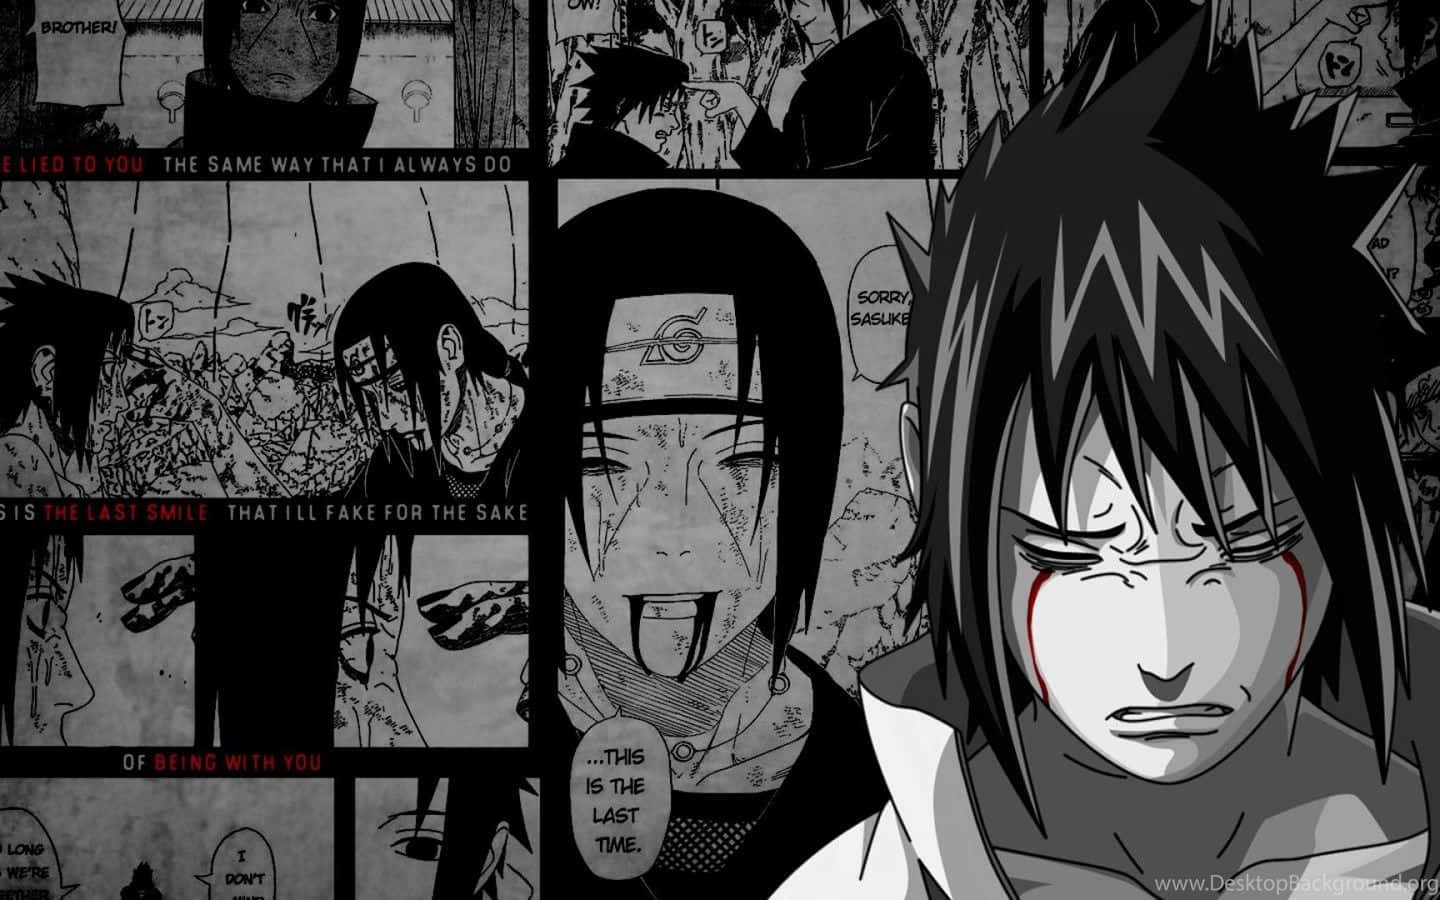 Sasuke Uchiha from Naruto Manga Wallpaper